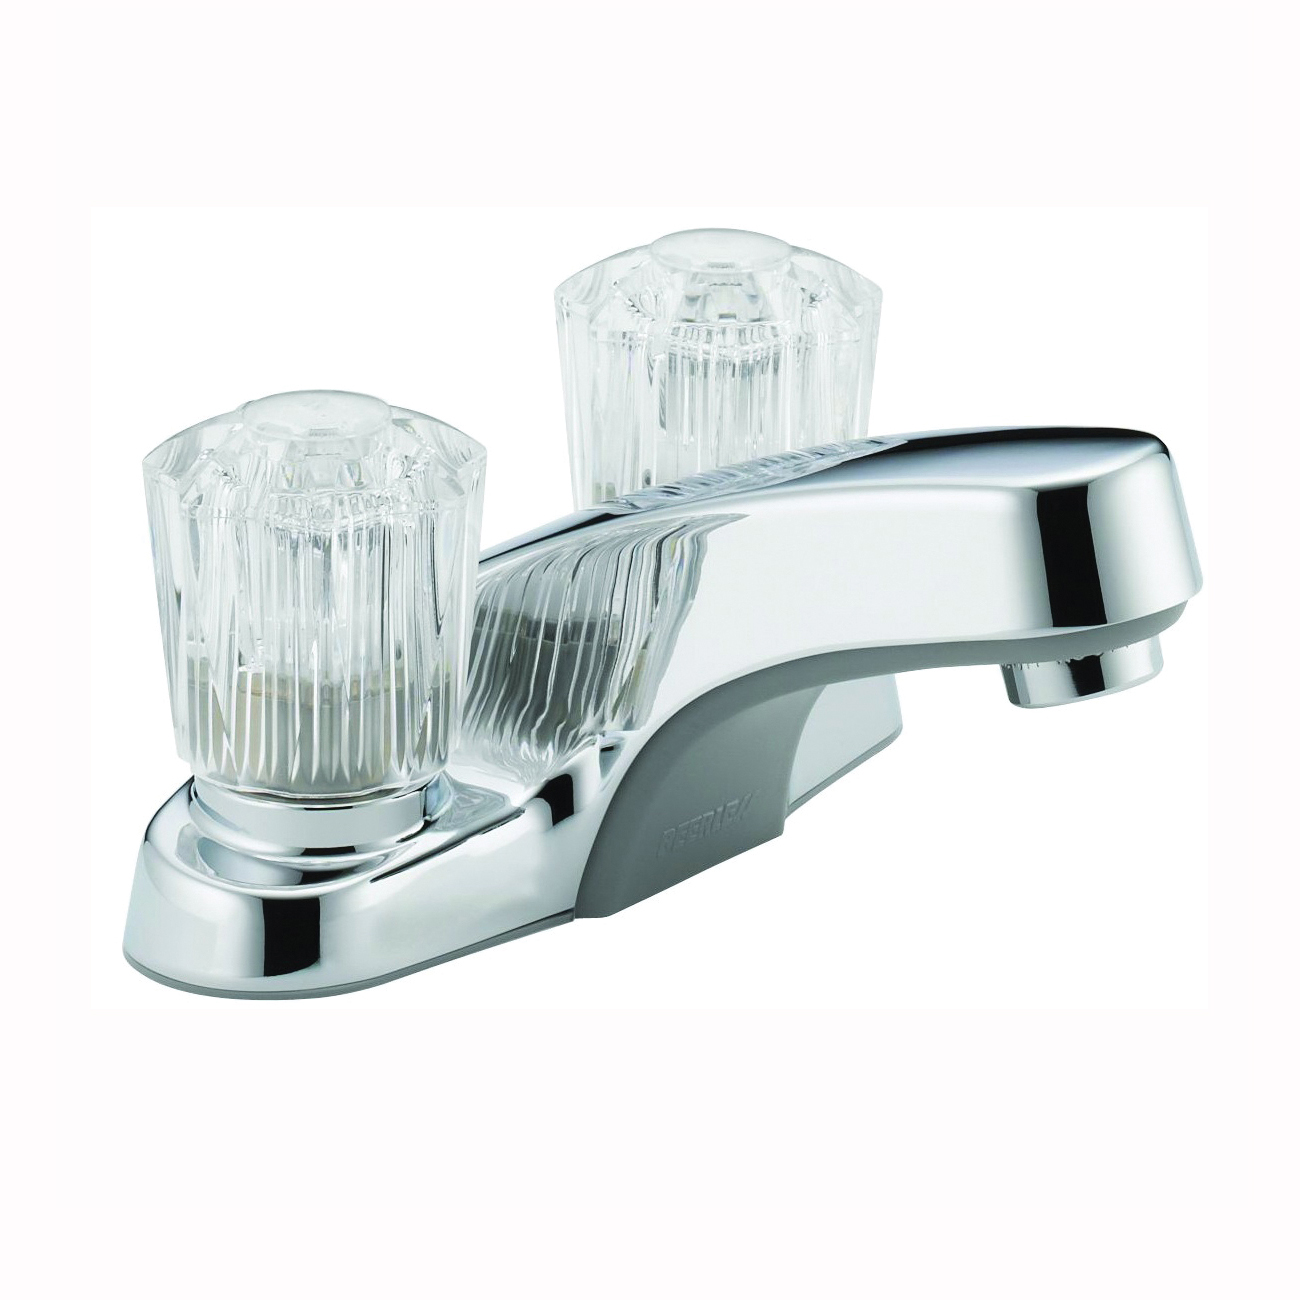 P240LF Bathroom Faucet, 1.2 gpm, 2-Faucet Handle, Chrome Plated, Knob Handle, Standard Spout